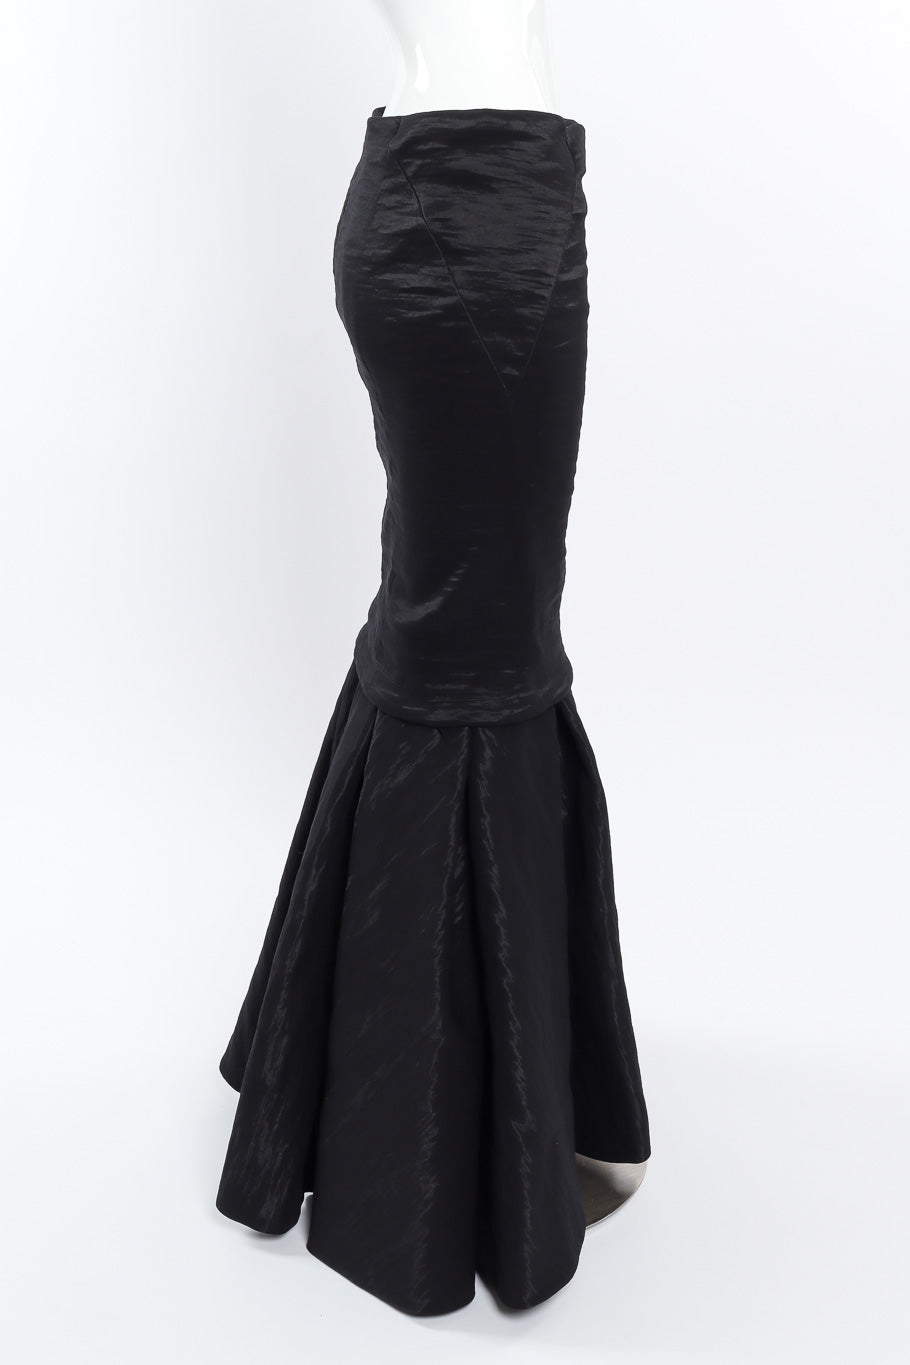 Evening set by Donna Karan on mannequin skirt side @recessla